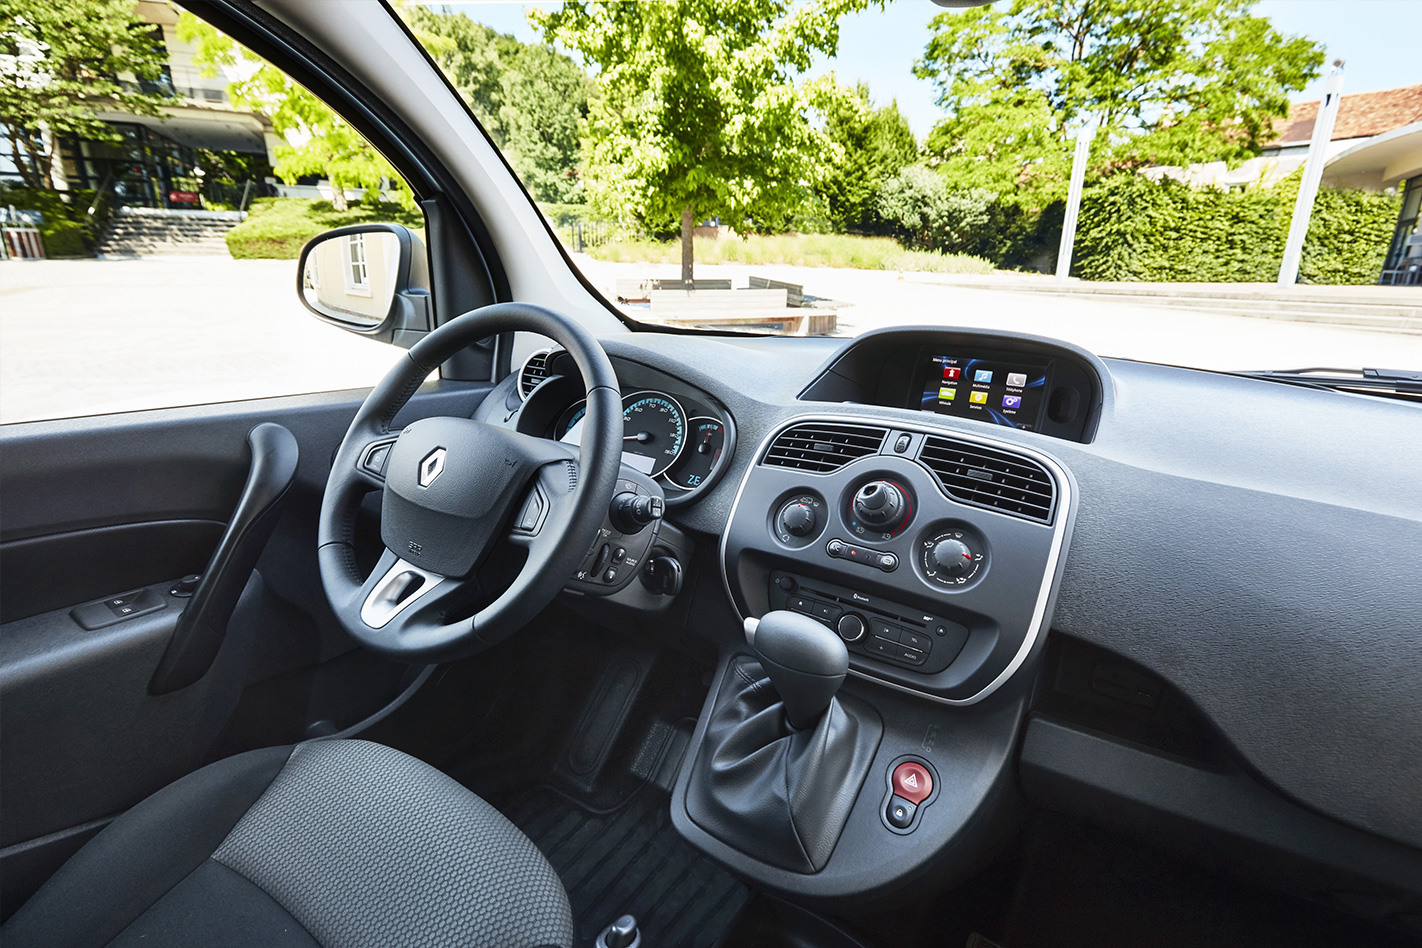 2018 Renault Kangoo Maxi ZE interior